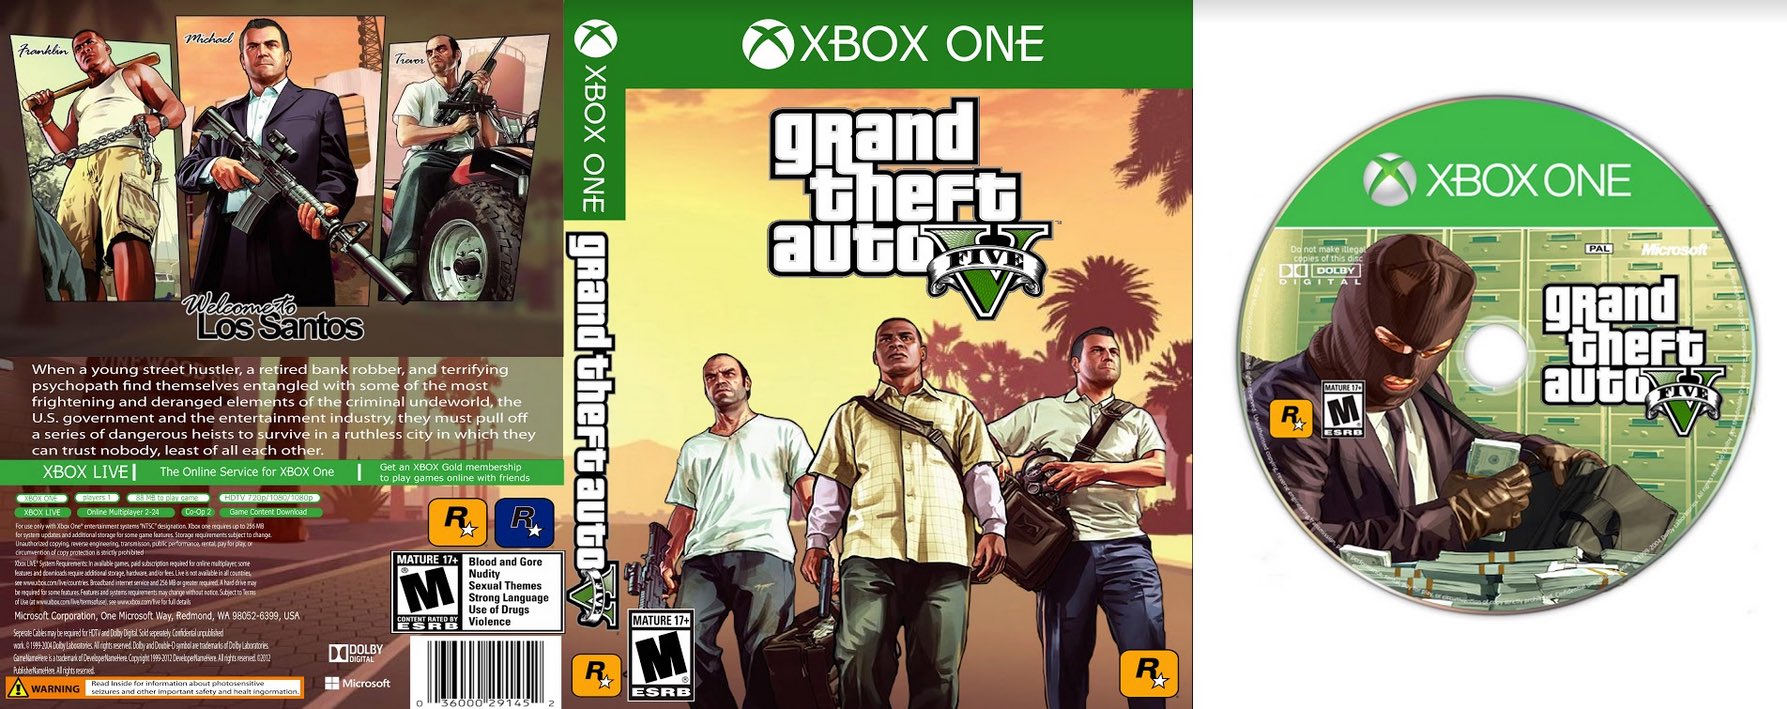 Grand Theft Auto V - Gta V - Gta 5 Xbox 360 em Promoção na Americanas